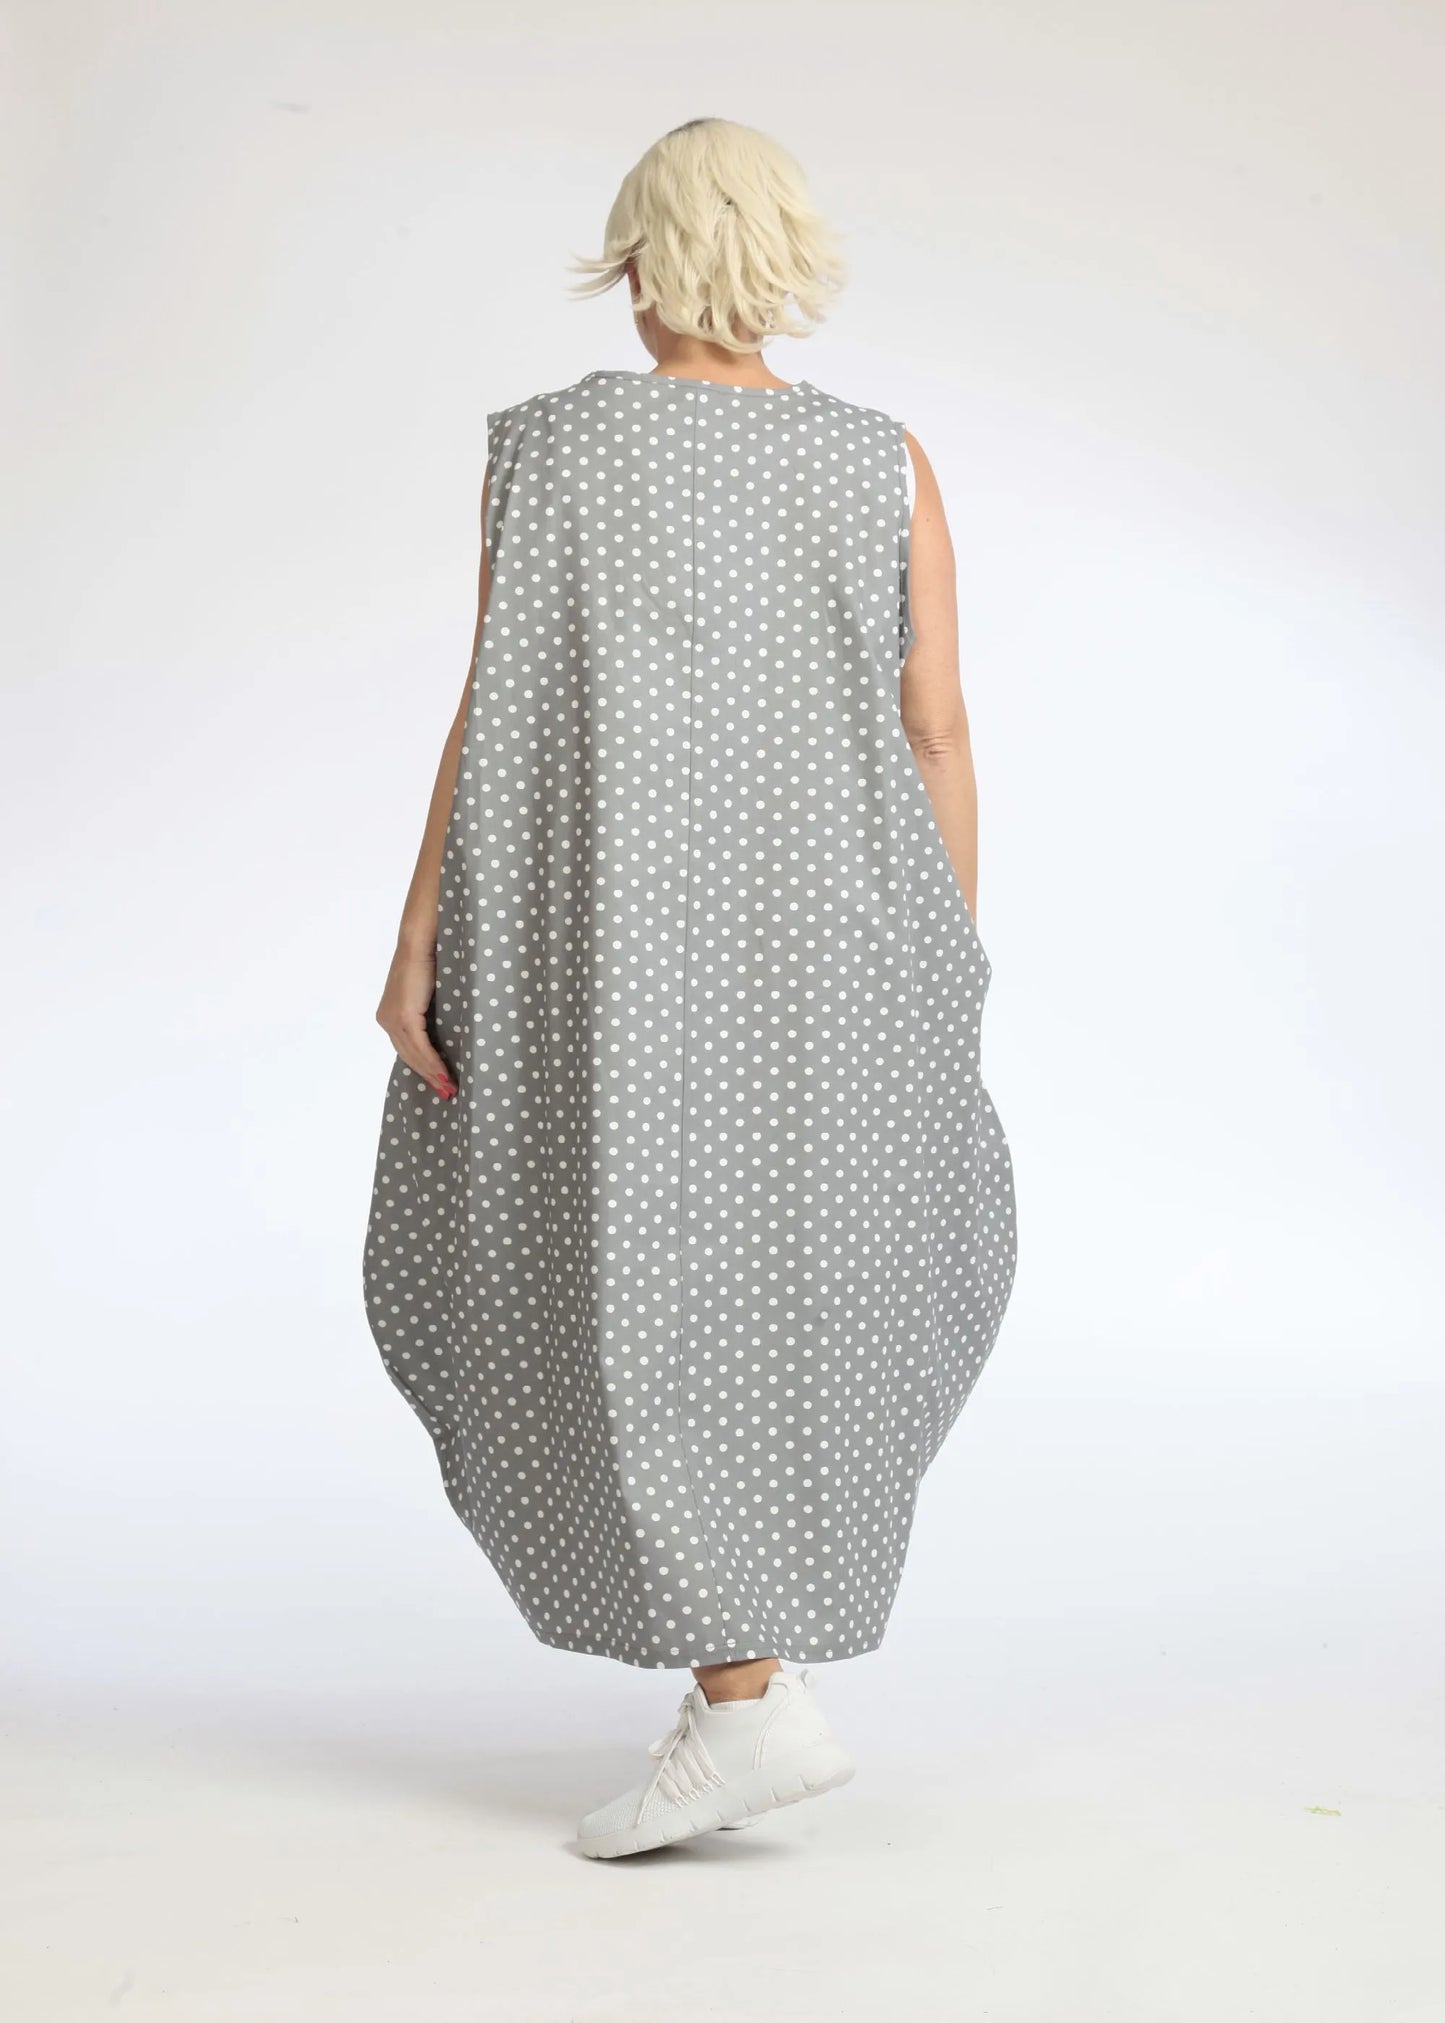 Sommer Kleid in Ballon Form aus glatter Popeline Qualität, Freya in Grau-Weiß